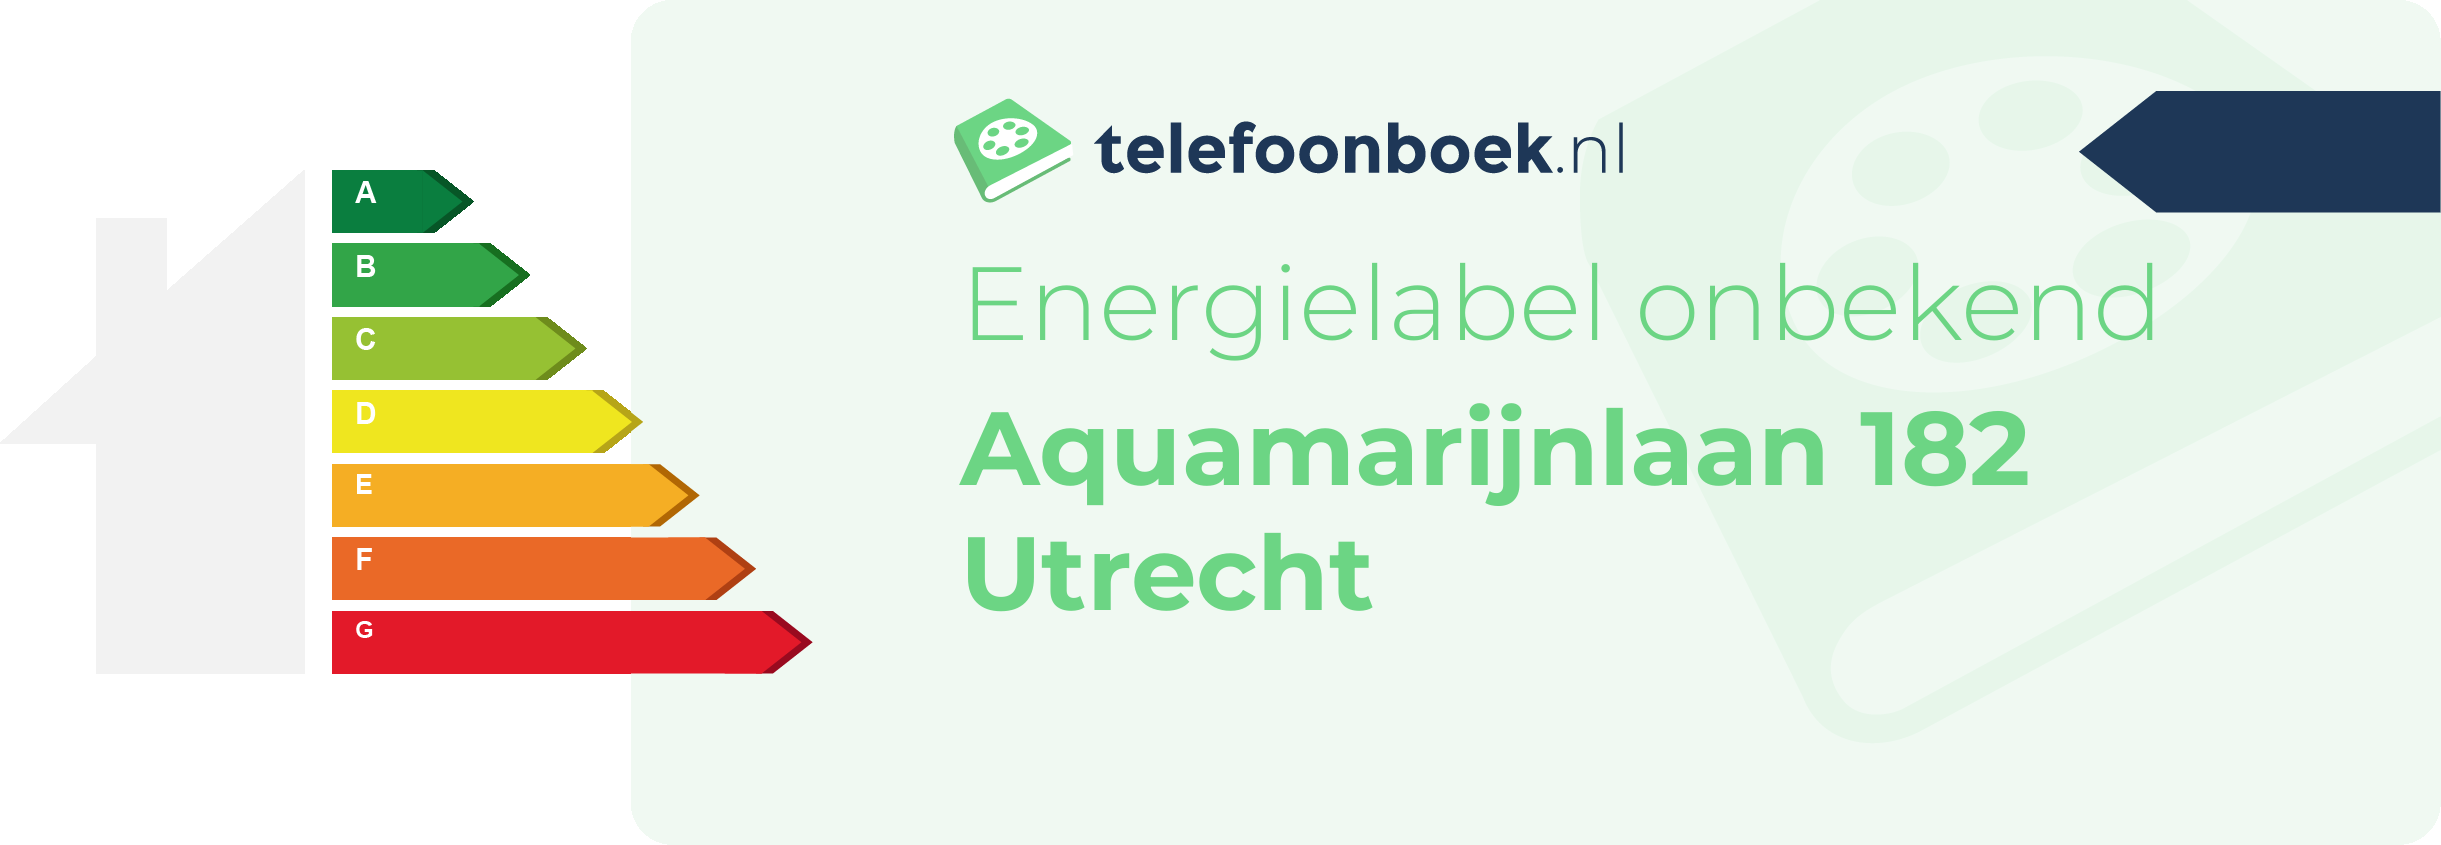 Energielabel Aquamarijnlaan 182 Utrecht